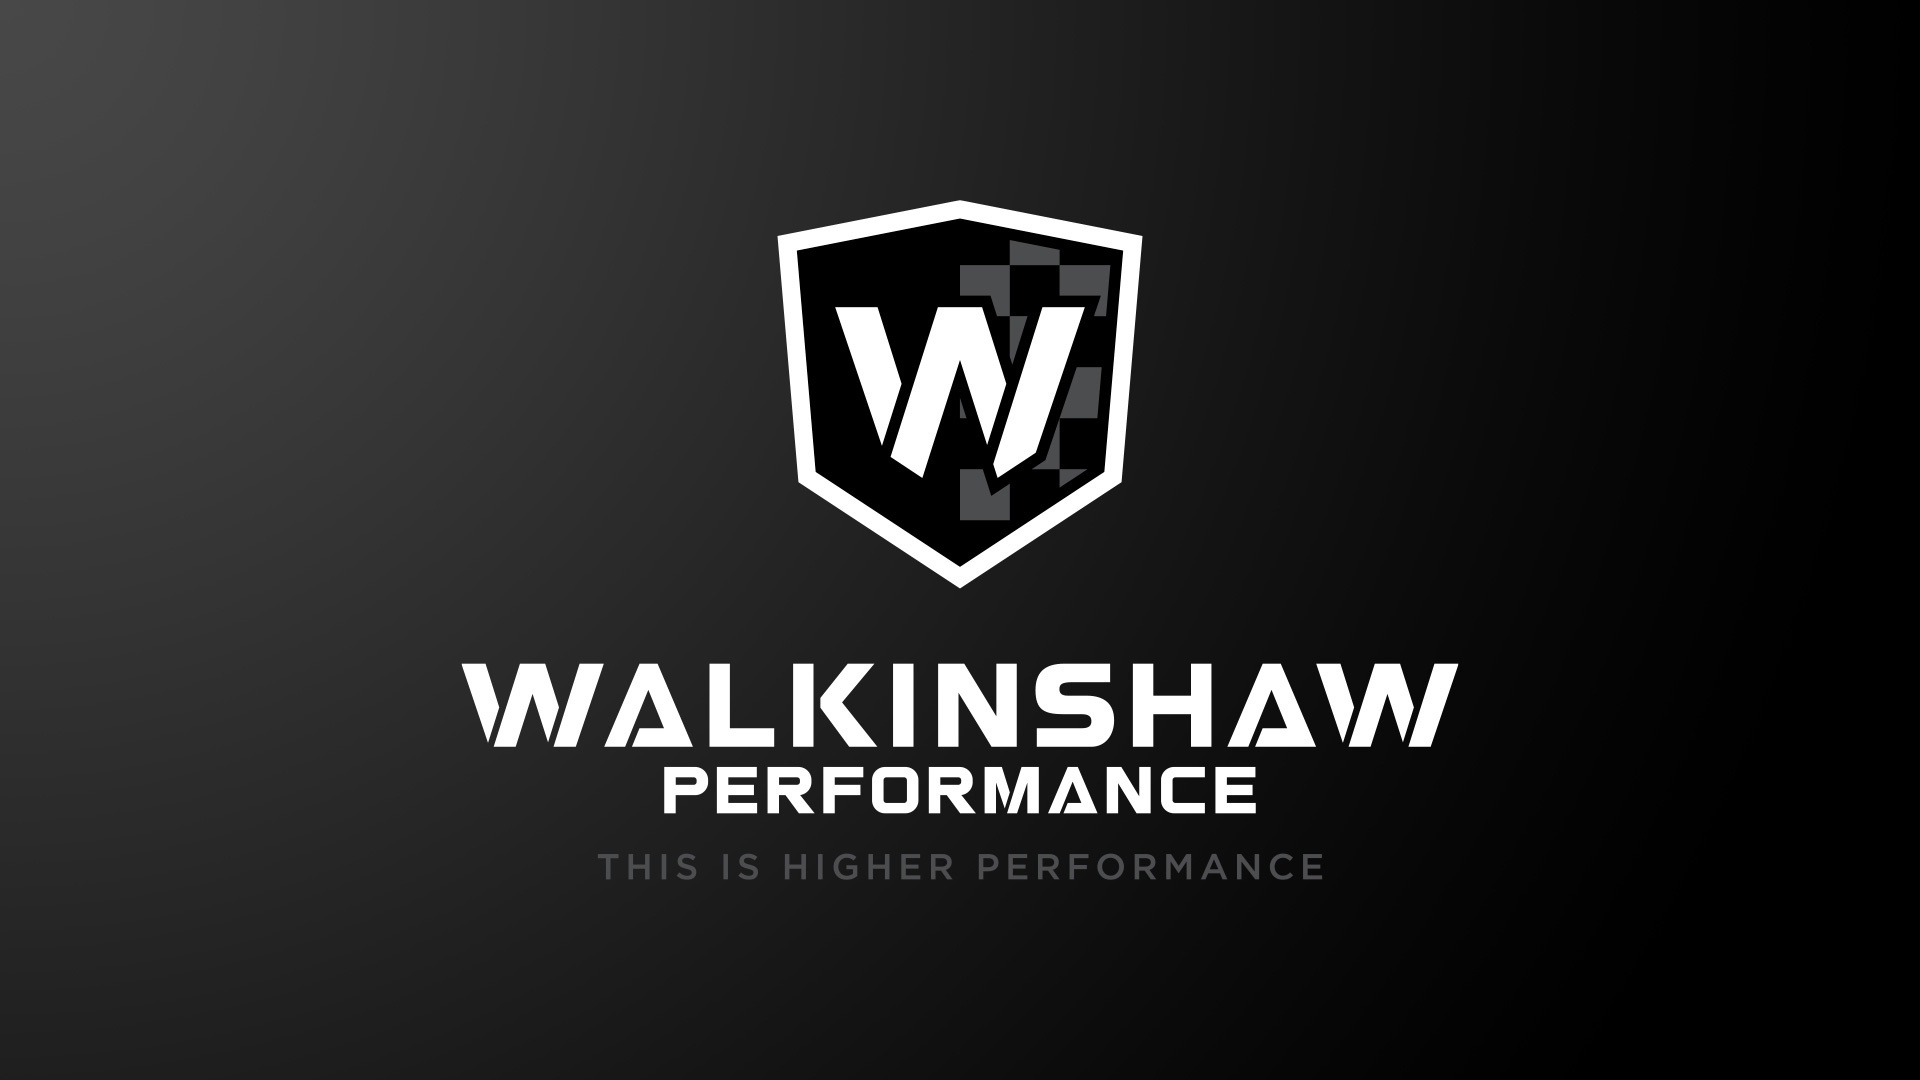 www.walkinshawperformance.co.uk